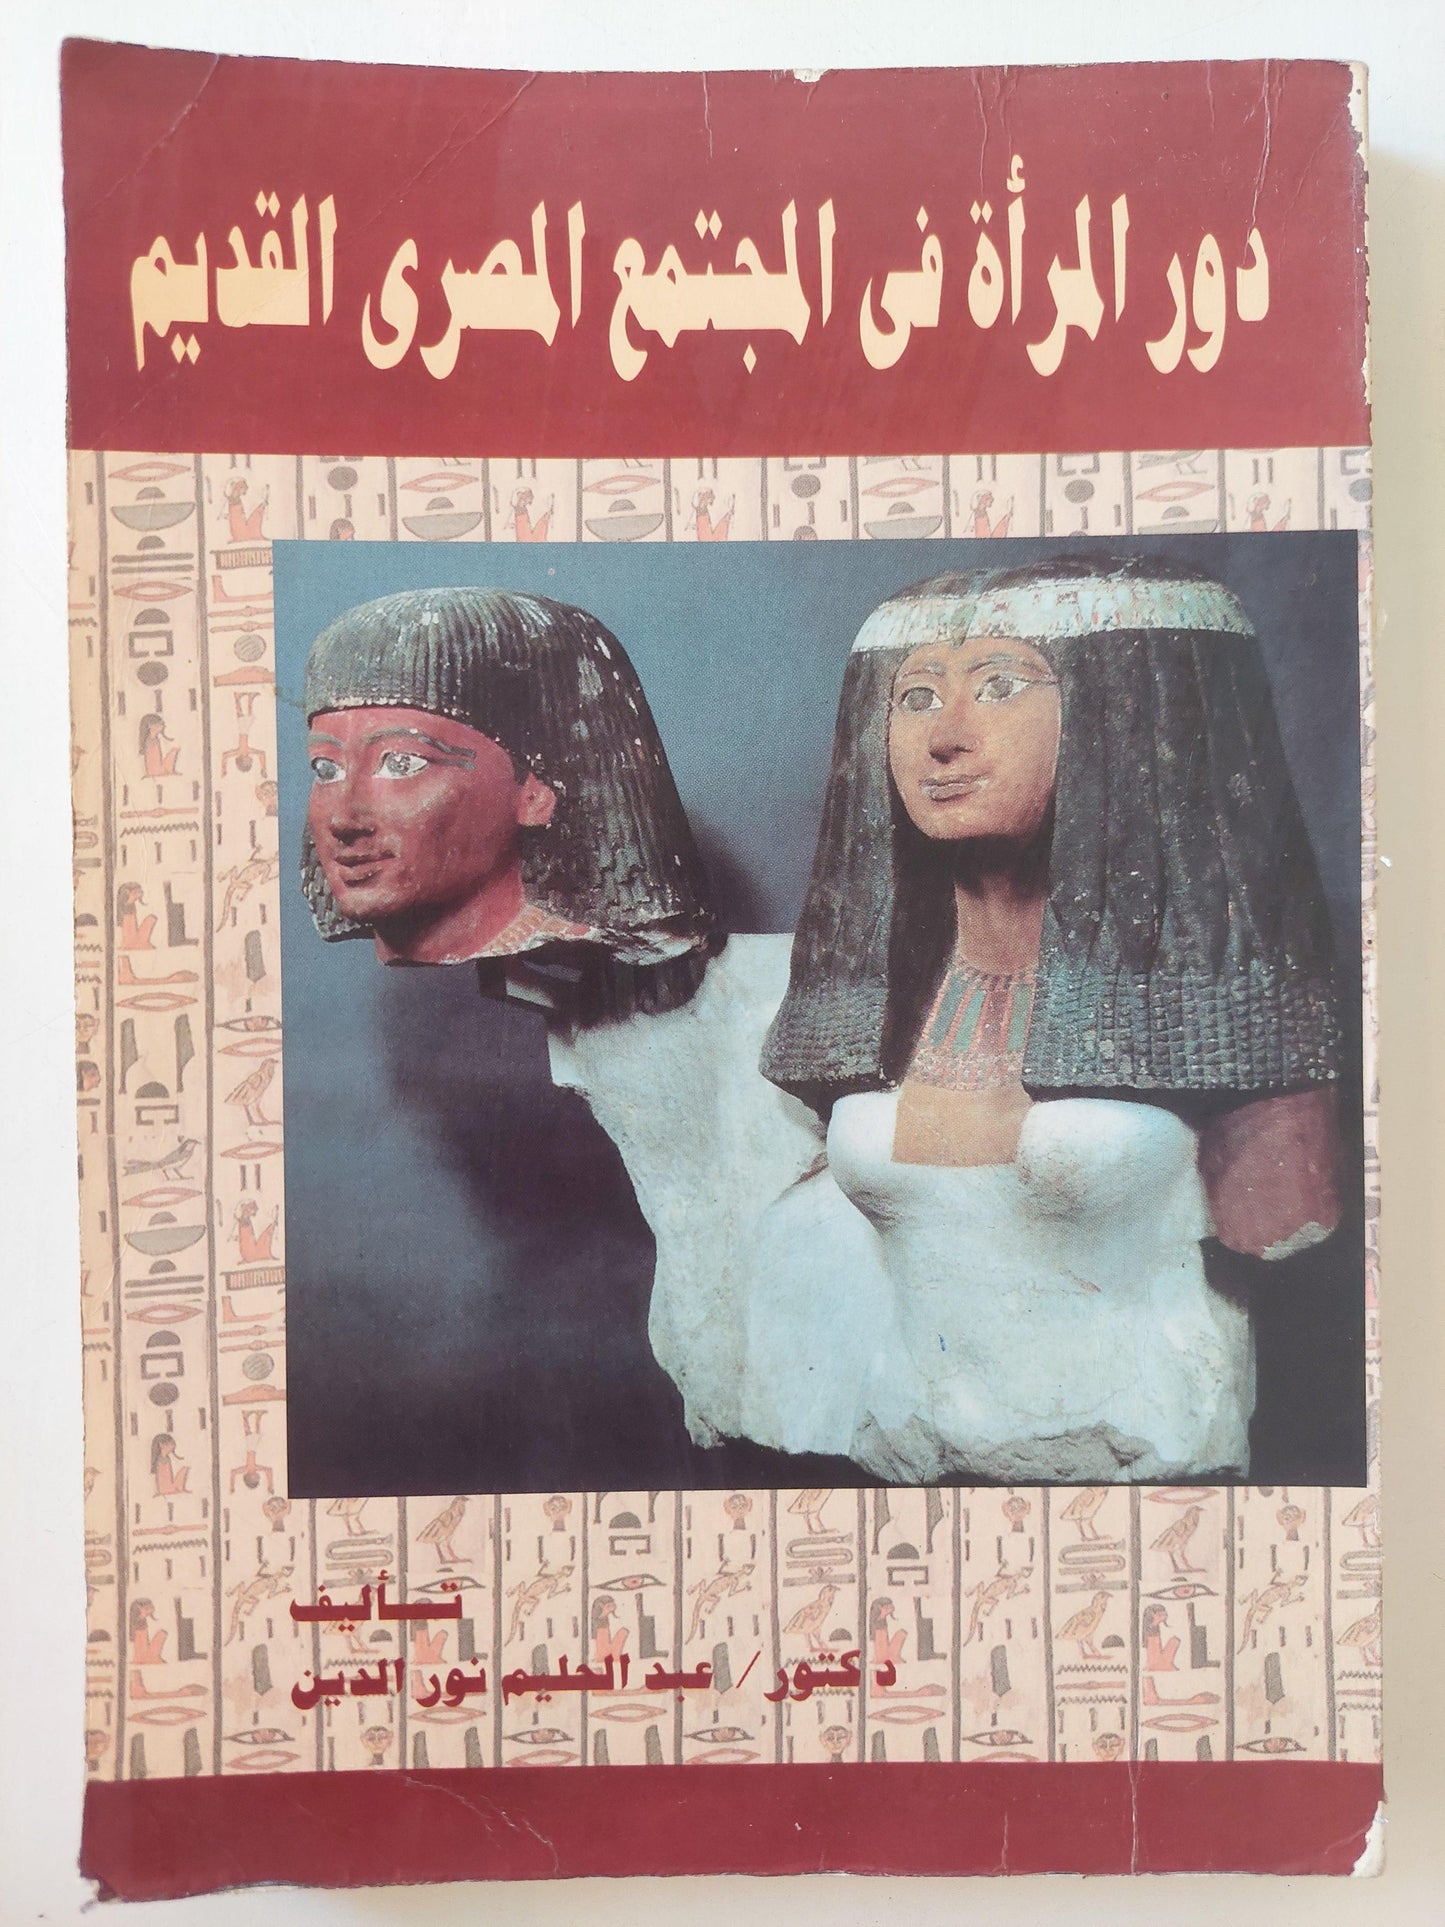 دور المرأة في المجتمع المصري القديم - متجر كتب مصر